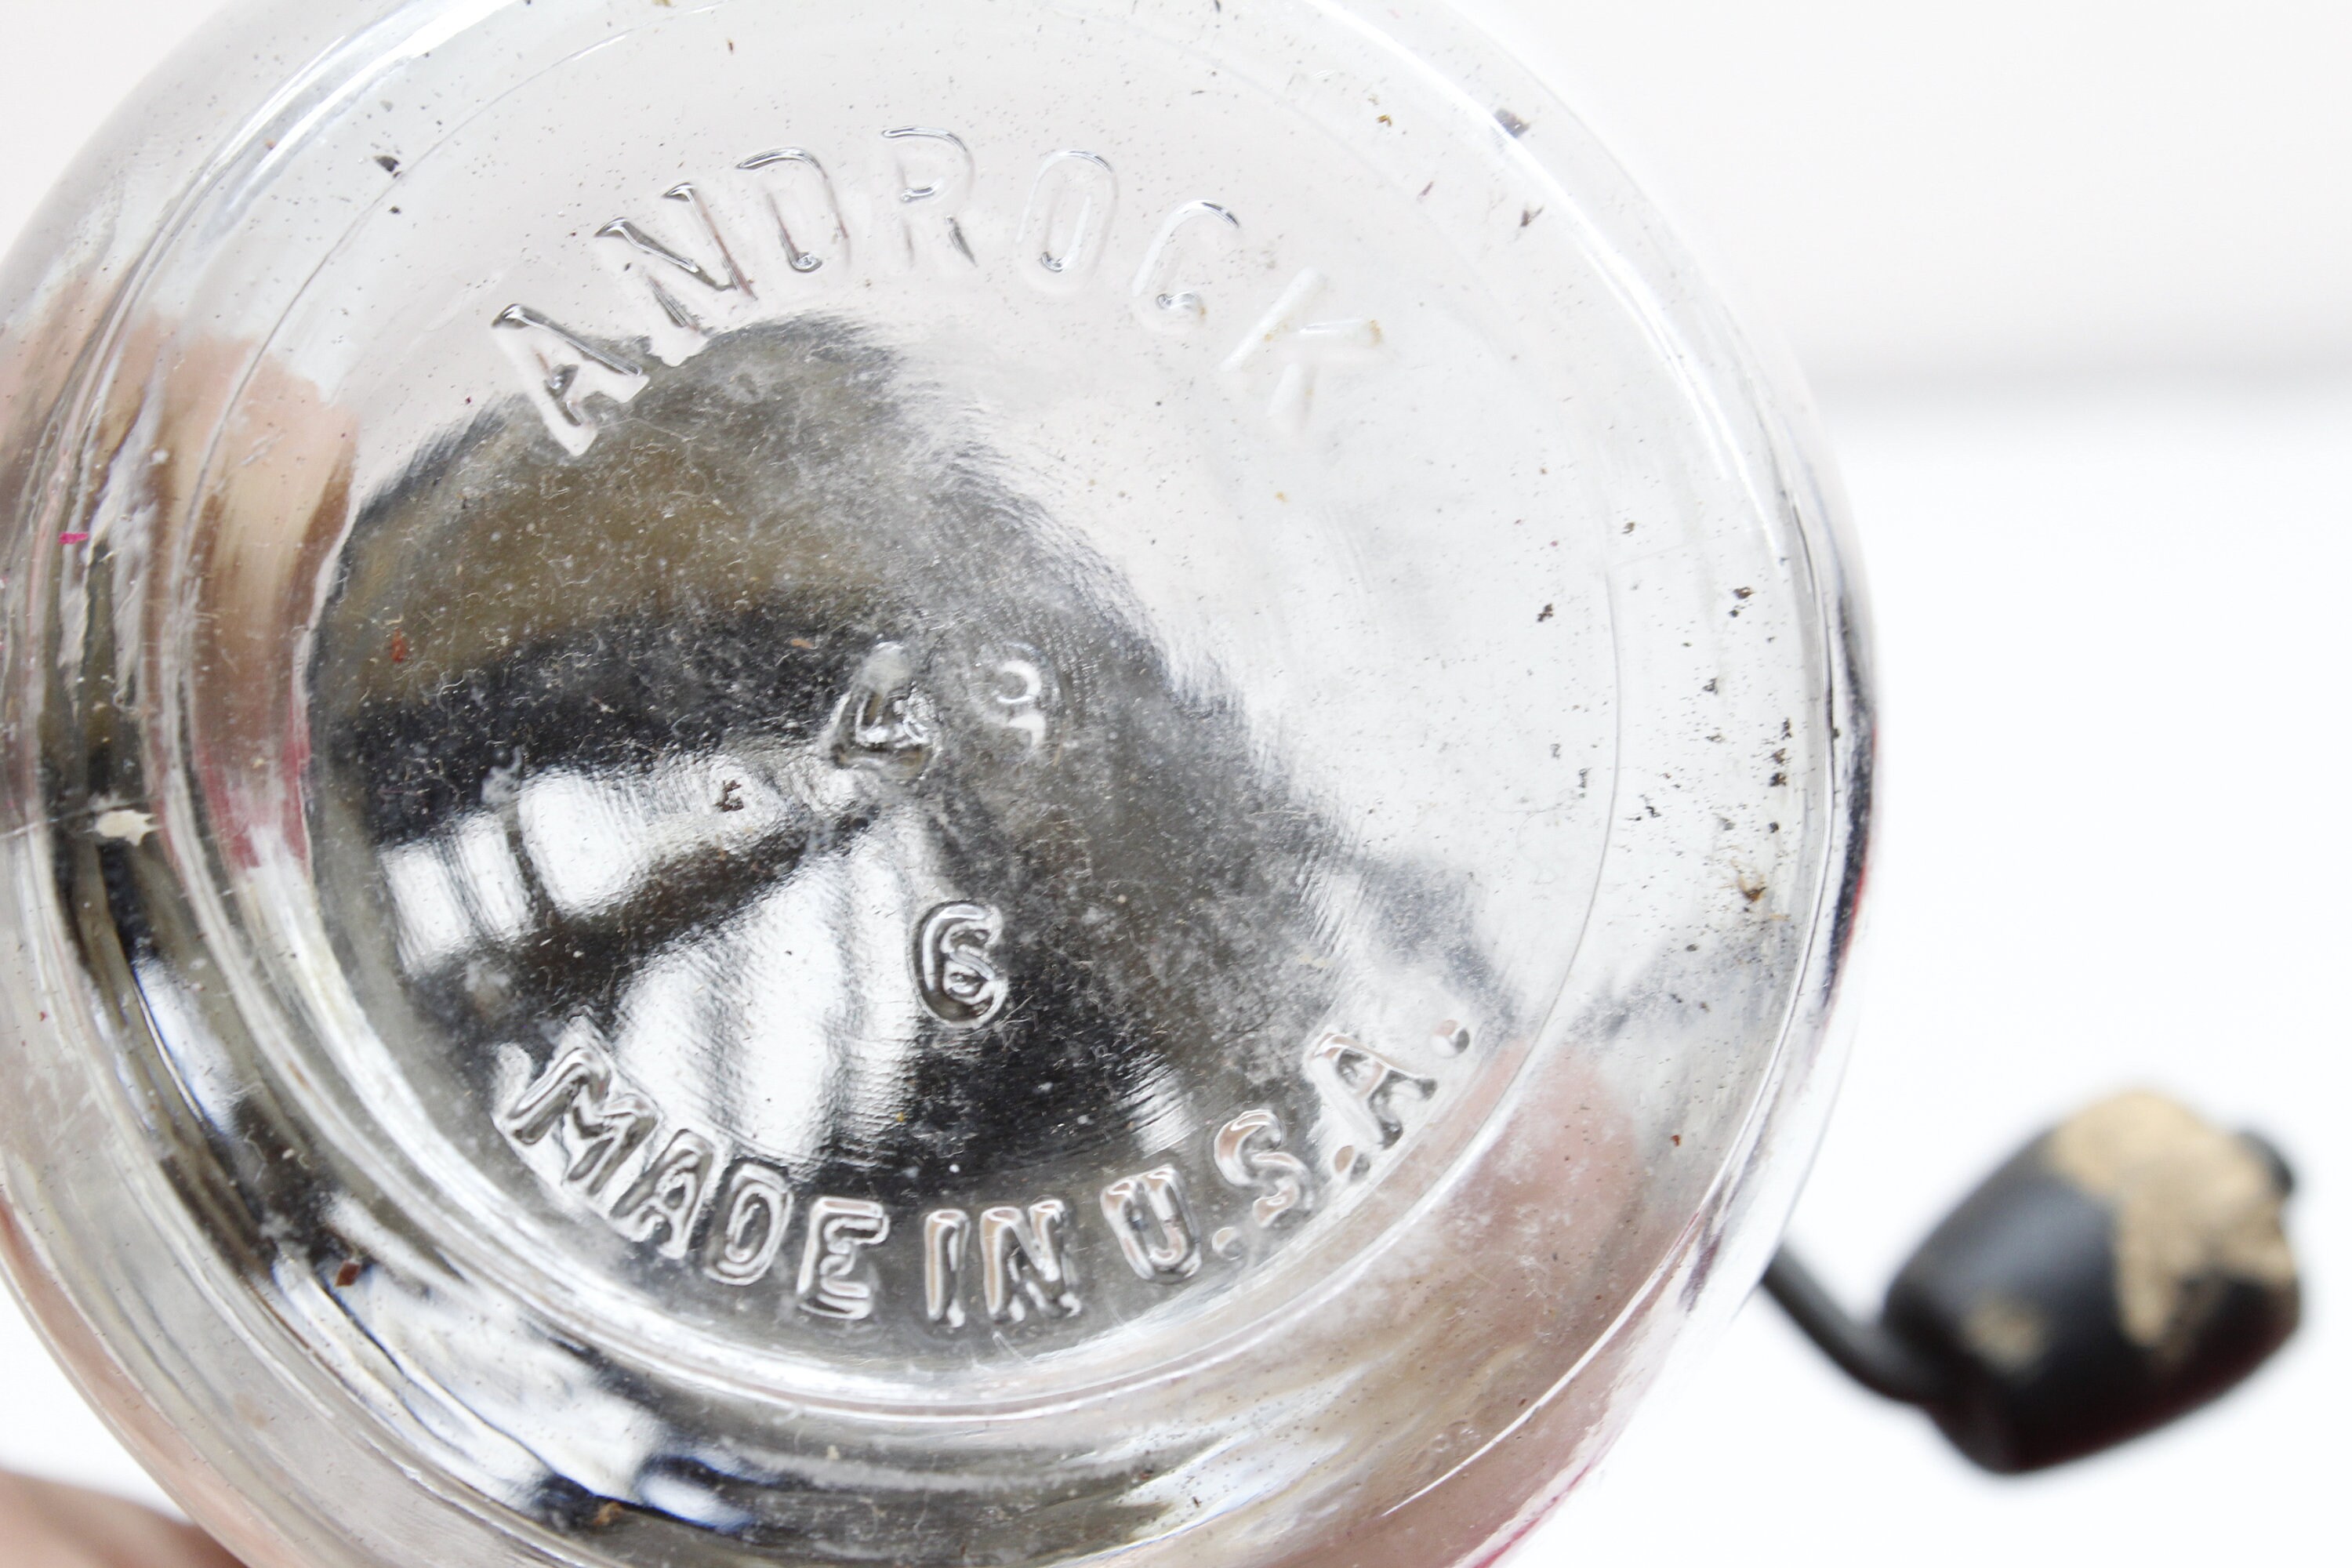 Vintage Androck Nut Grinder/ Glass Jar Nut Chopper With a Crank/  Kitchenware/ Vintage Home Decor 